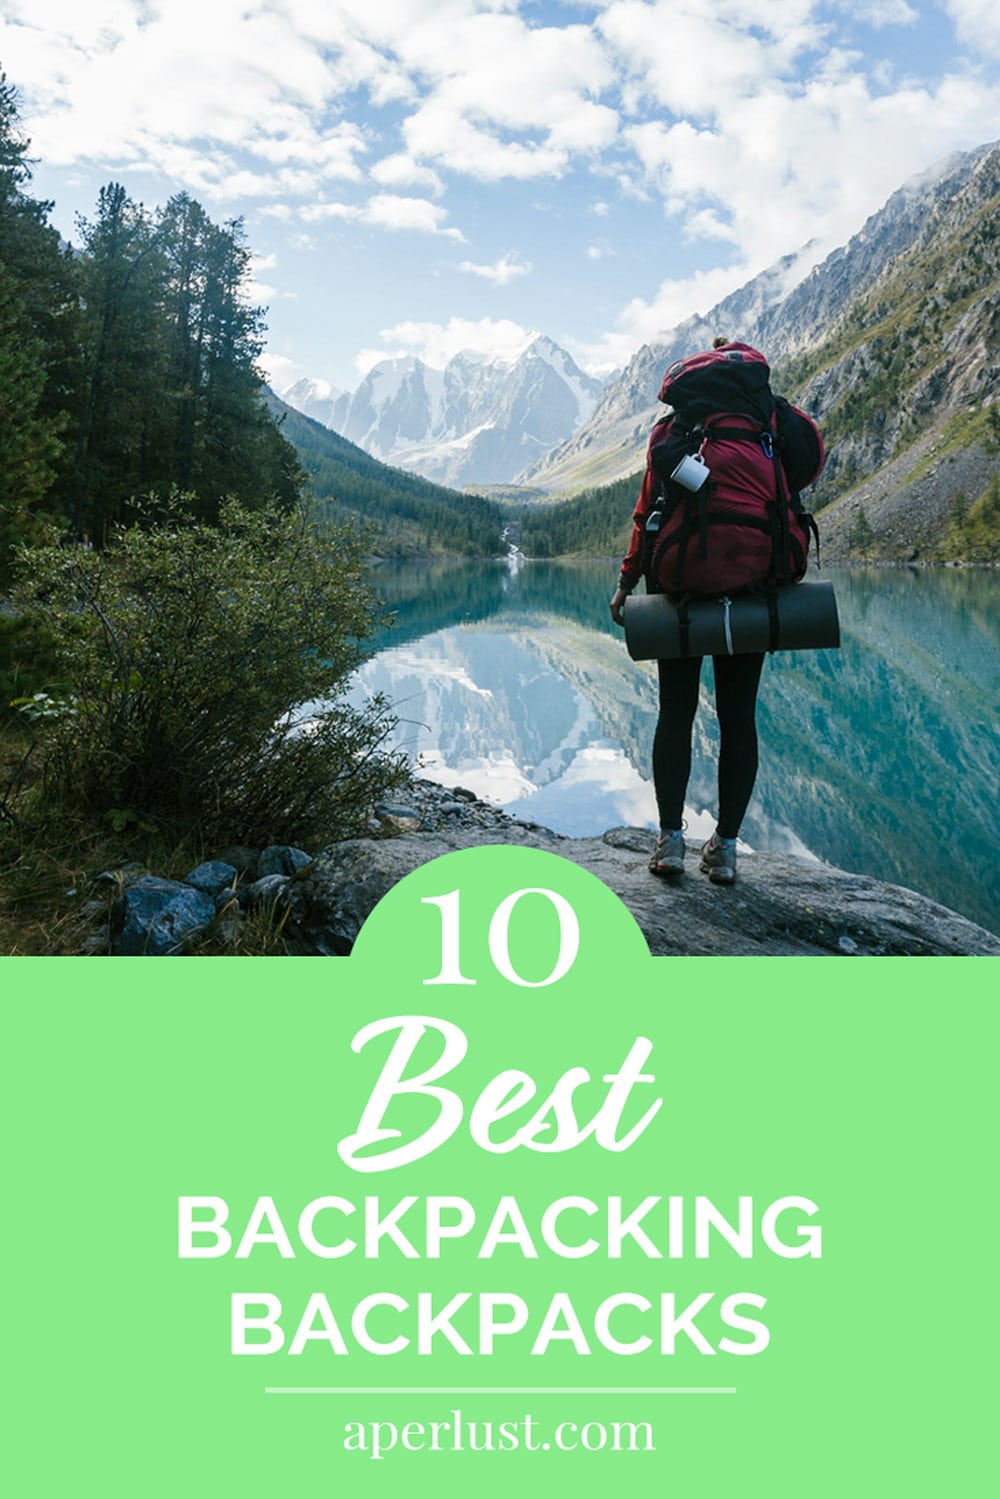 10 Best Backpacking Backpacks Pinterest